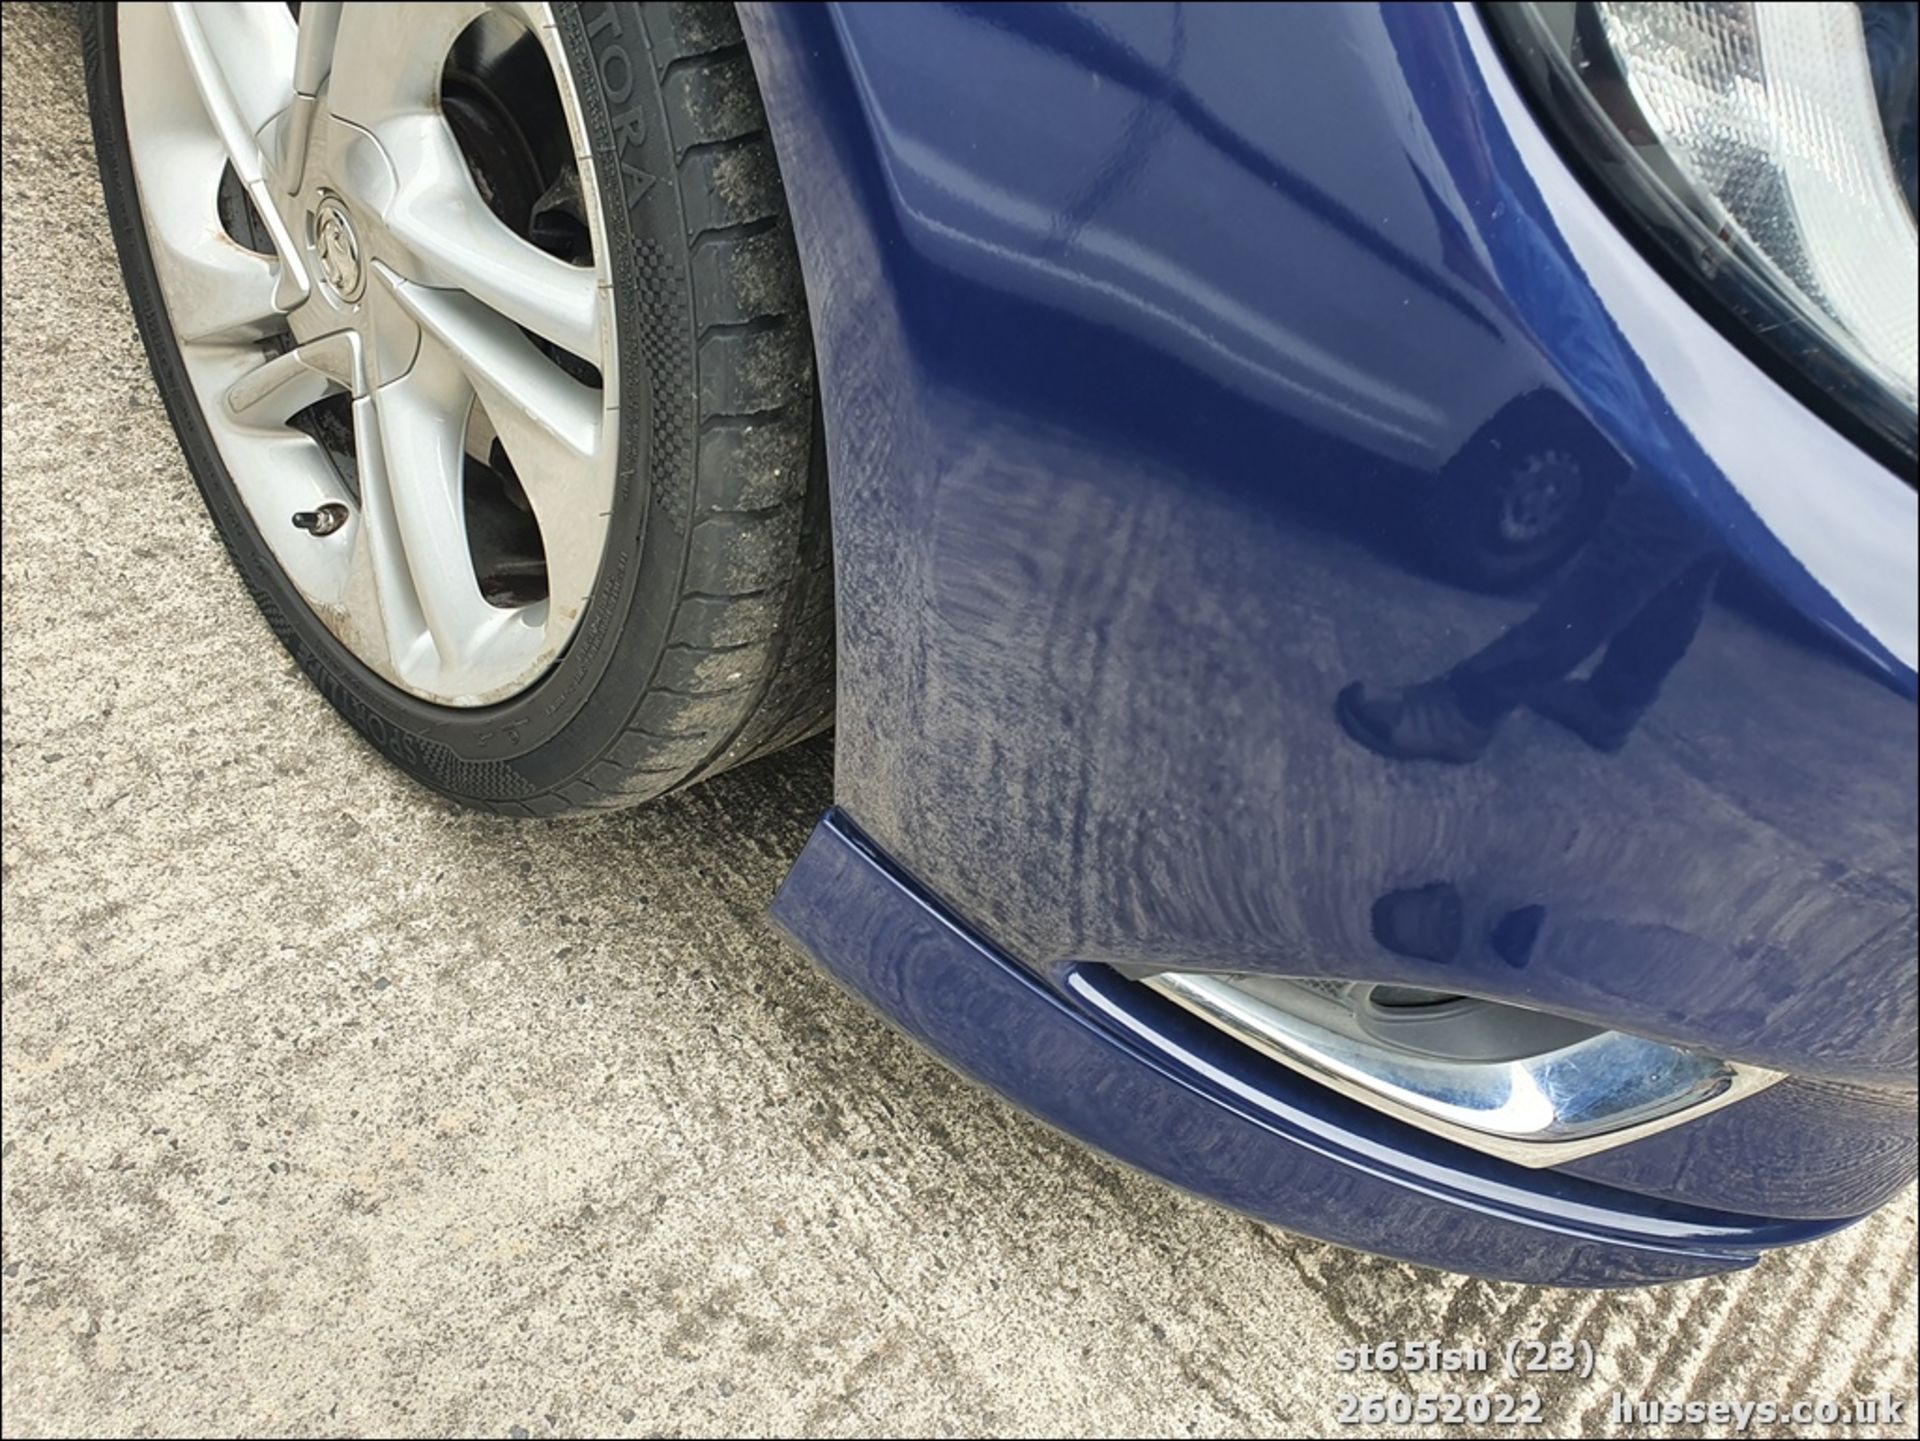 15/65 VAUXHALL CORSA DESIGN - 1229cc 3dr Hatchback (Blue, 39k) - Image 23 of 27